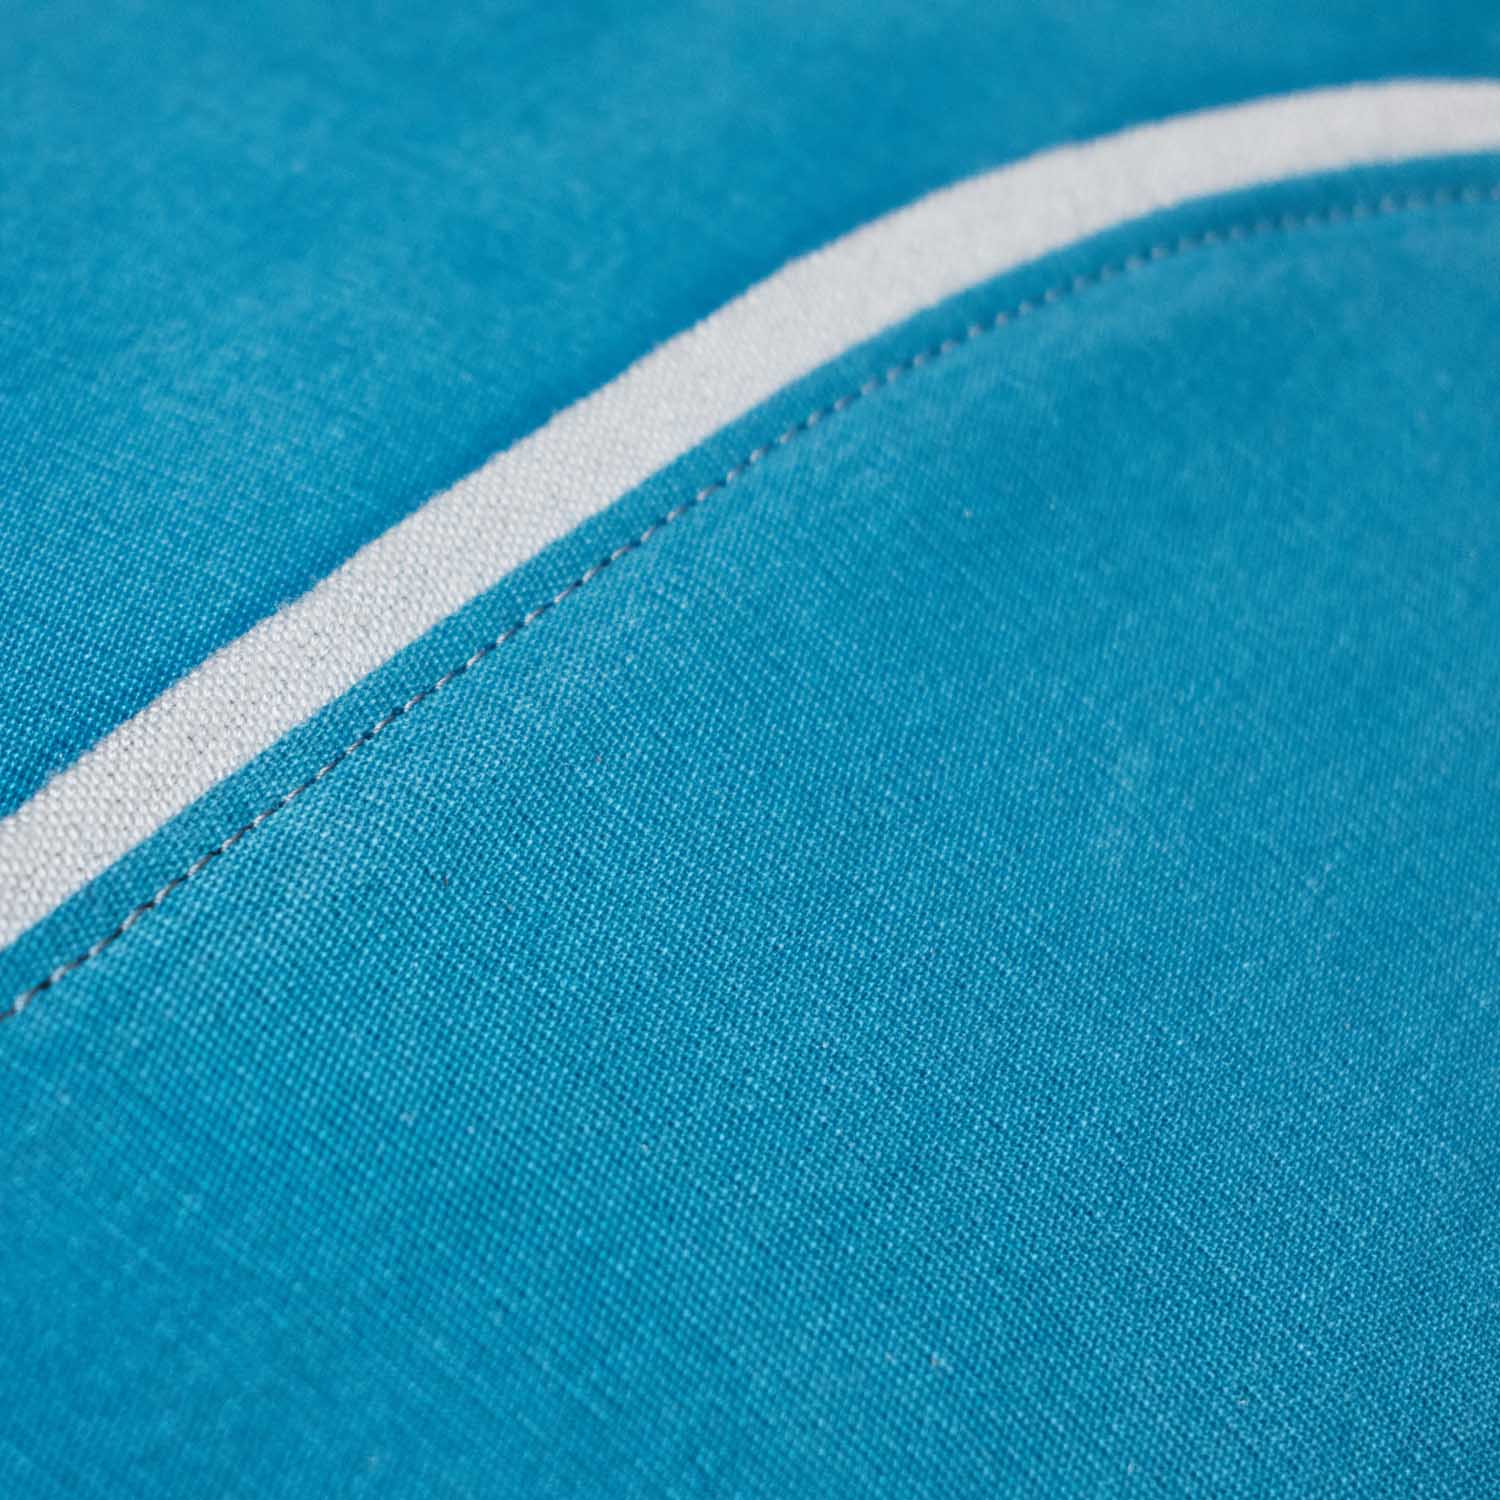 blue natural sustainable cotton textile closeup